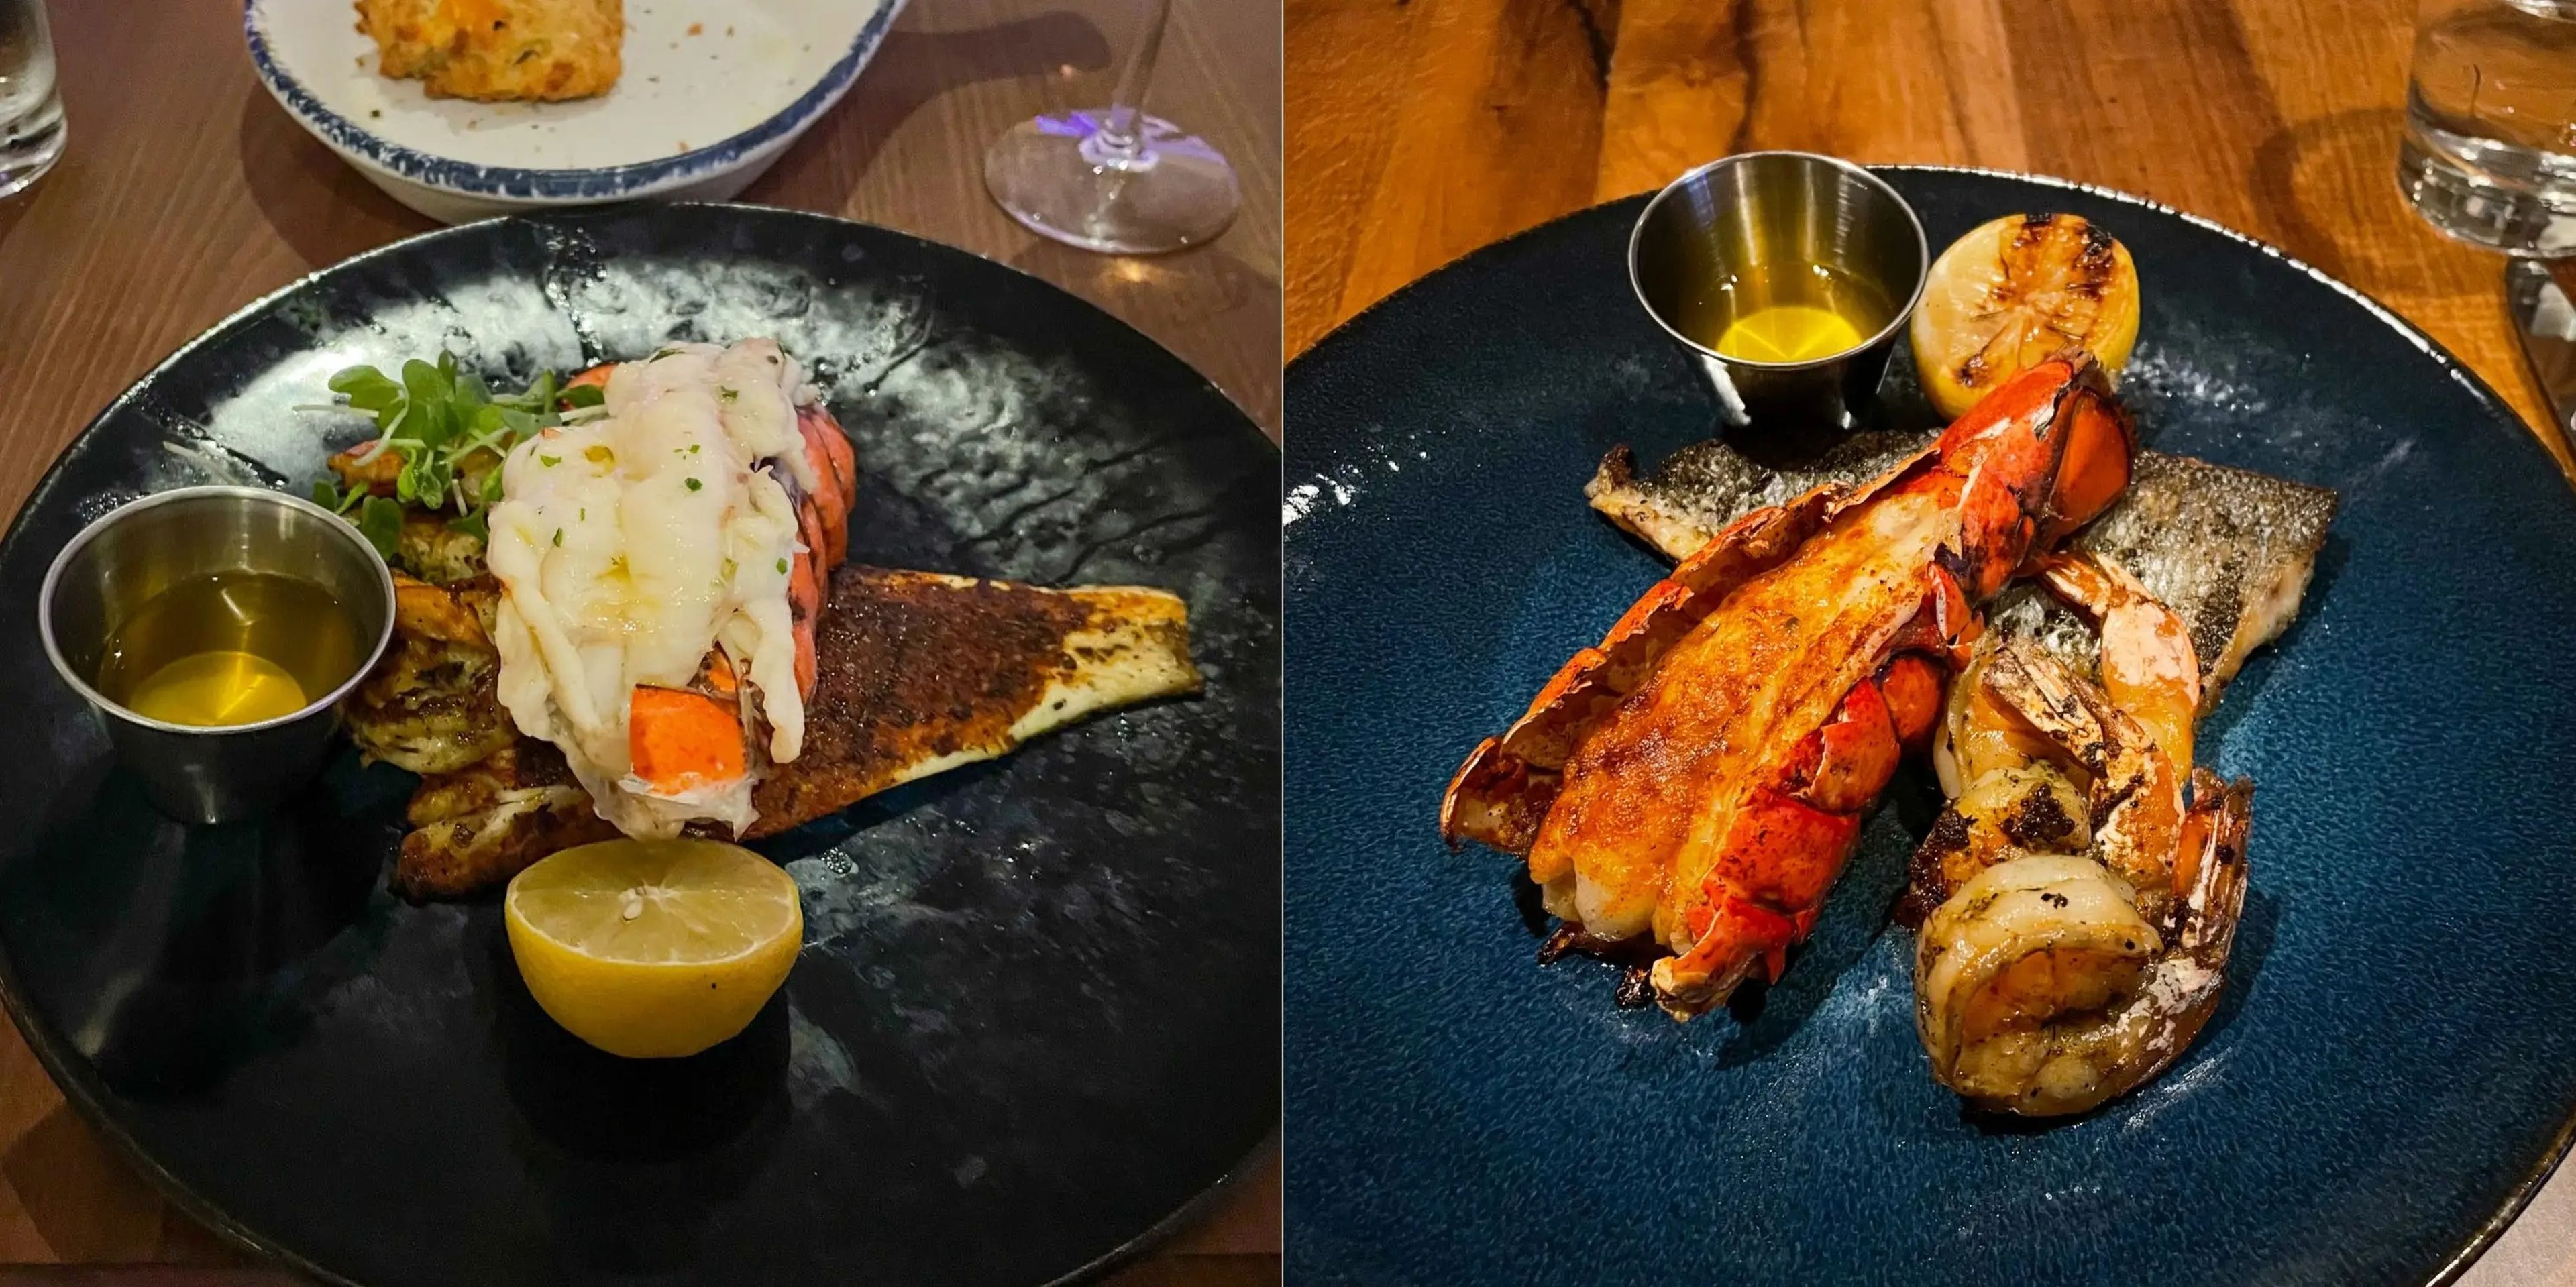 El menú del capitán del Wonder of the Seas (izquierda) y del Icon of the Seas (derecha) en el restaurante Hooked Seafood incluye una cola de langosta, un filete de pescado y gambas.